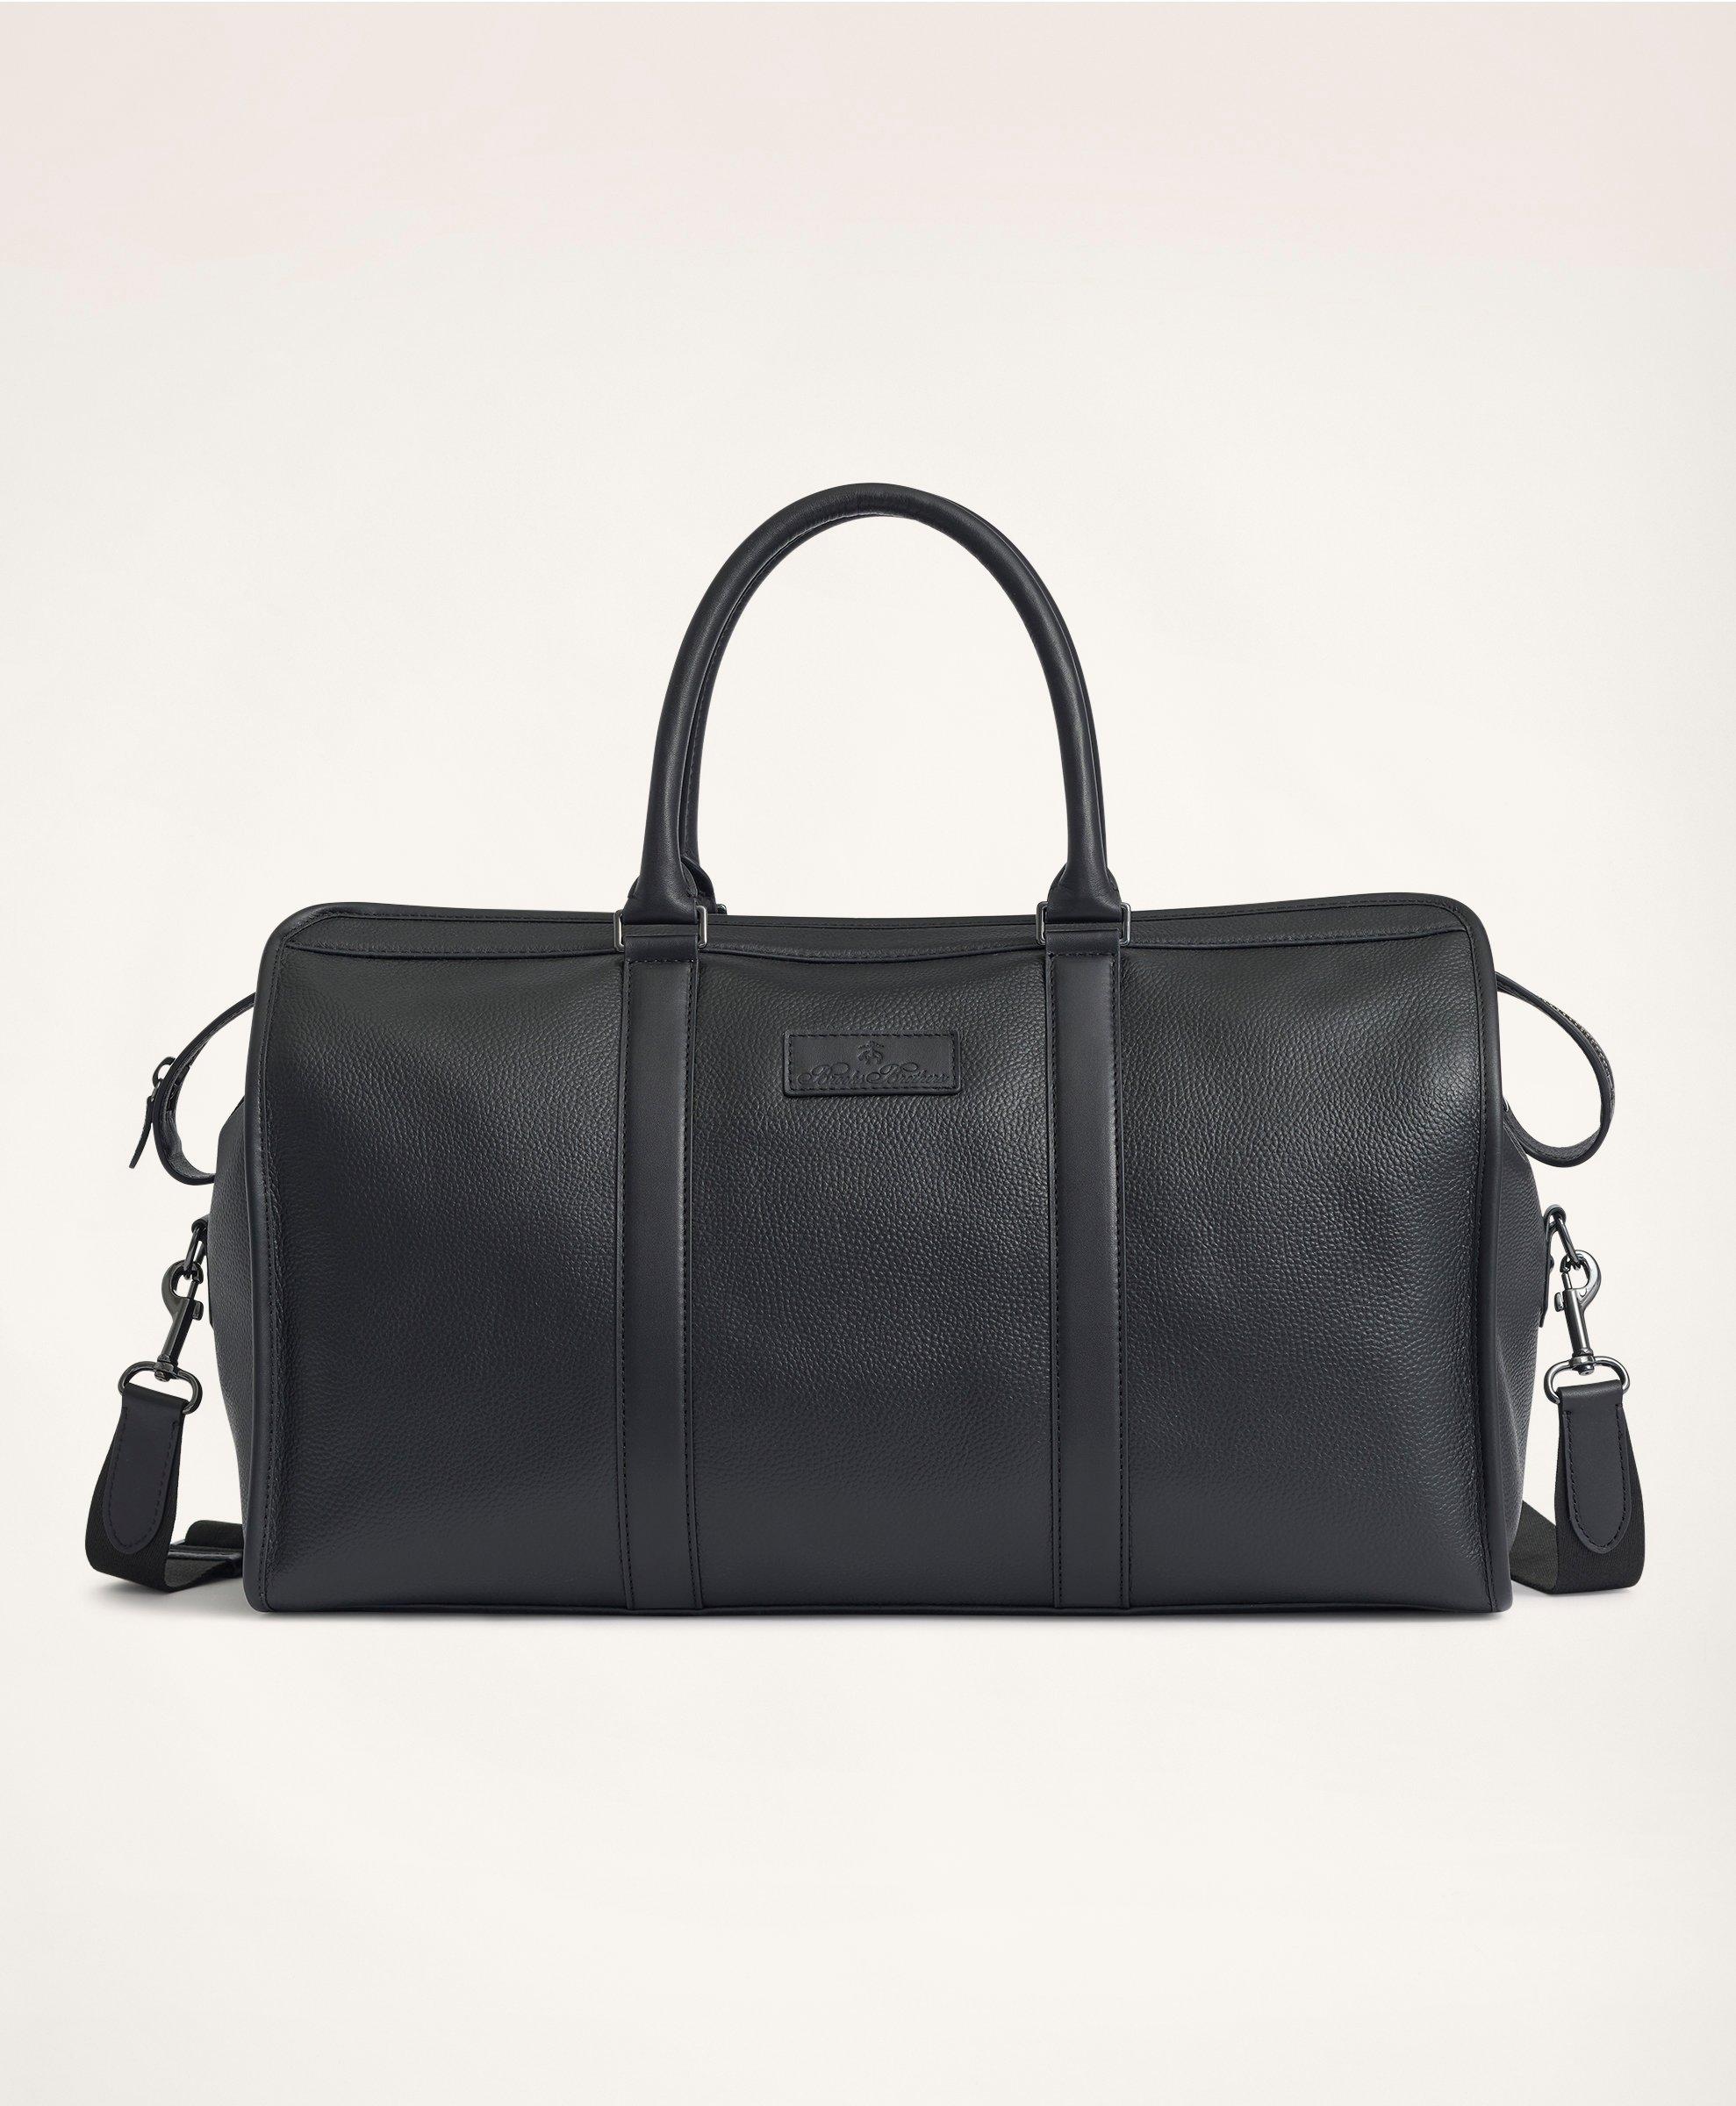 Brooks Brothers Pebbled Leather Duffel Bag | Black